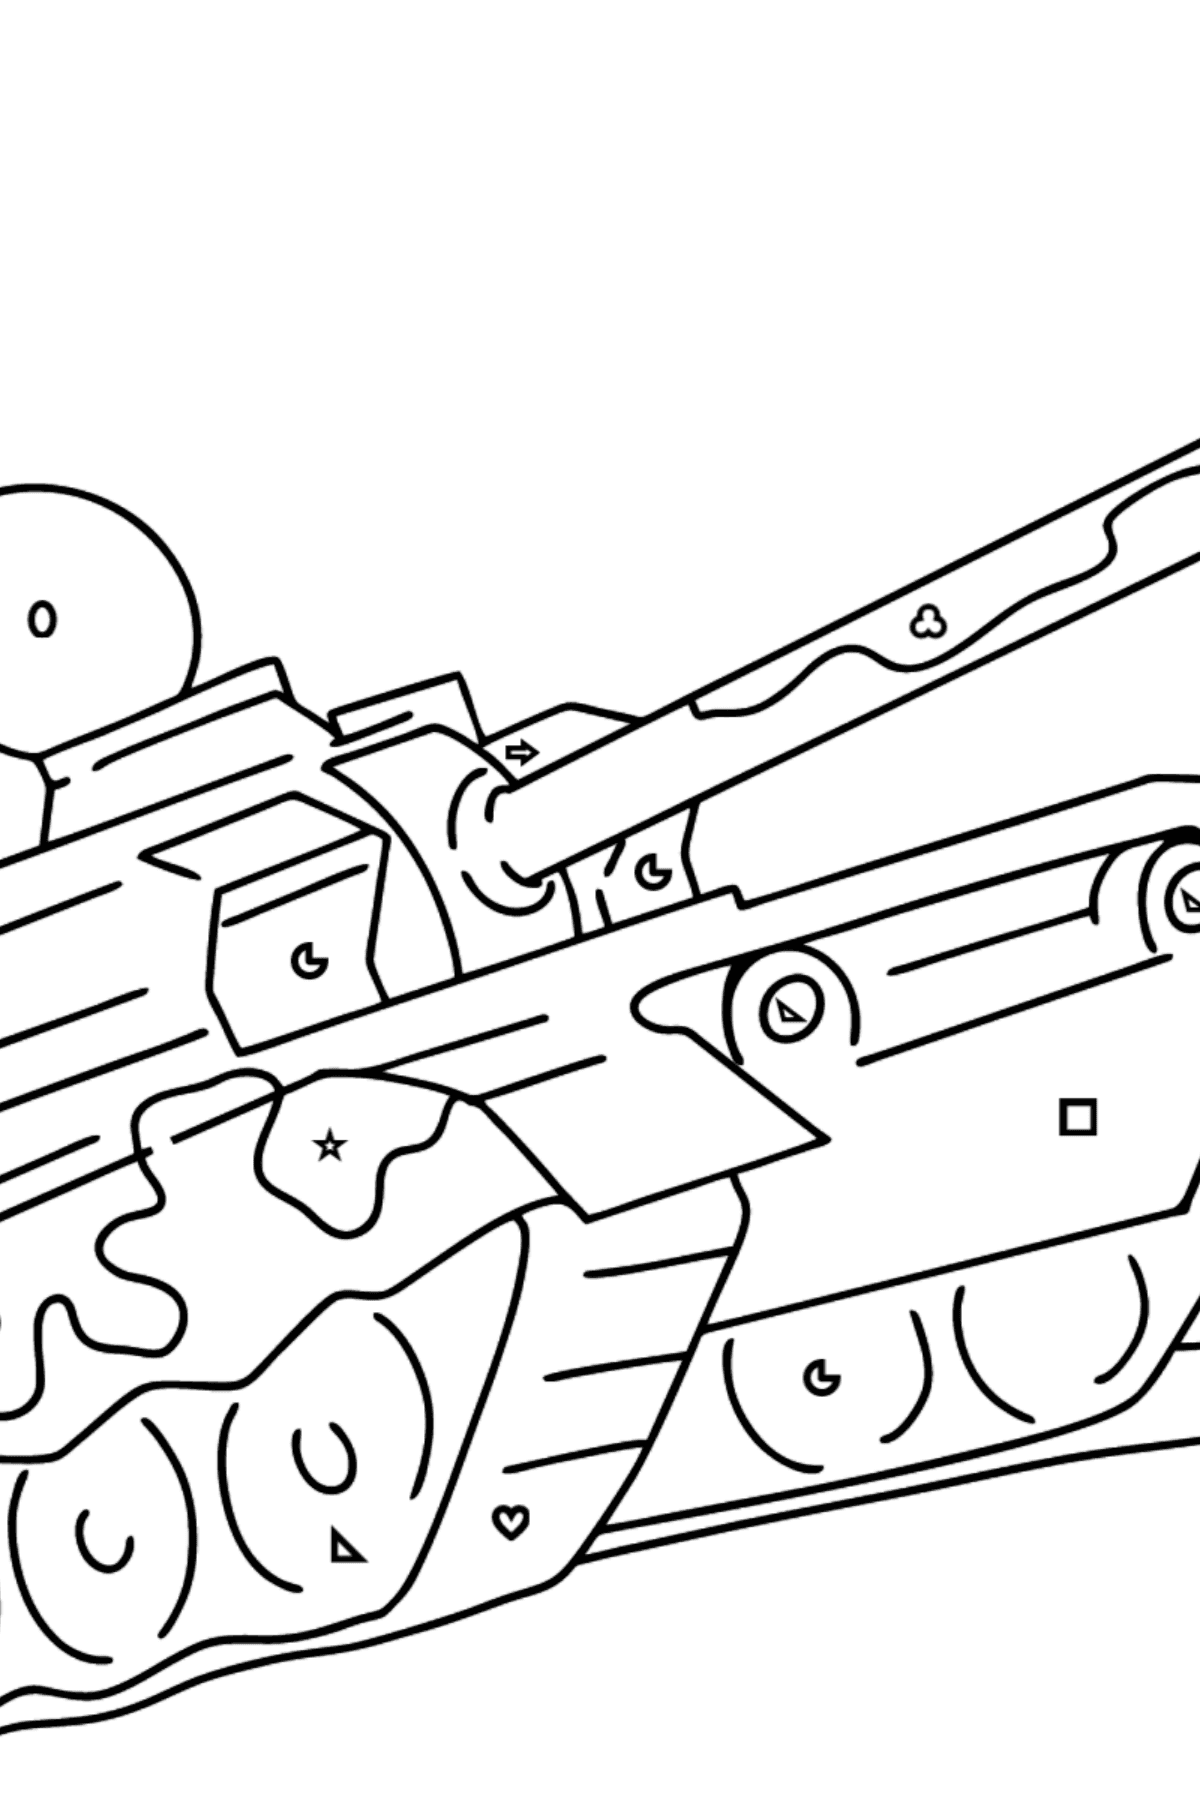 Desenho para colorir de tanques militares - Colorir por Formas Geométricas para Crianças